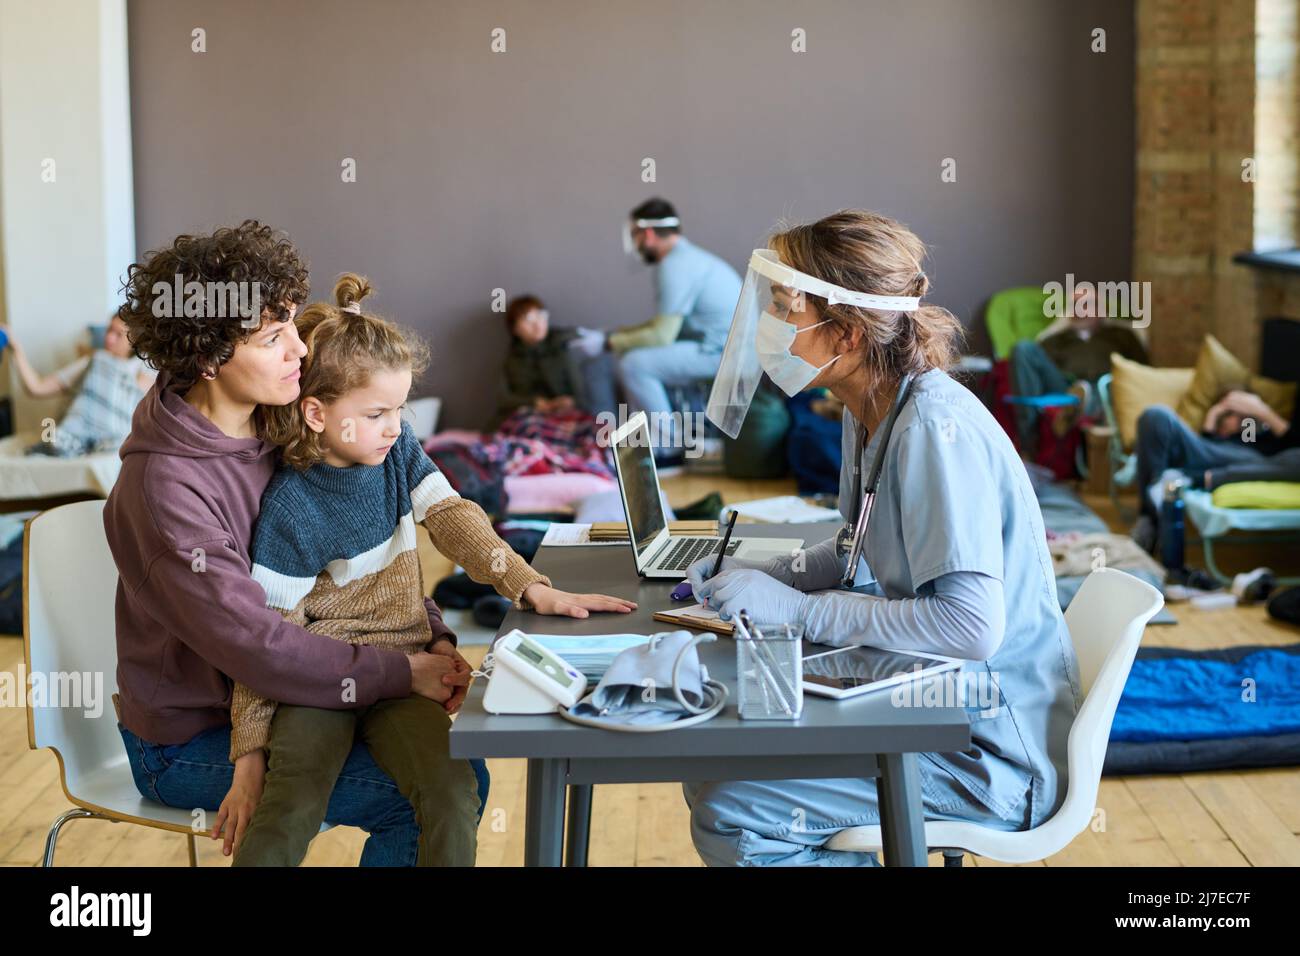 Jeune femme réfugiée avec un petit fils à genoux à l'écoute des conseils médicaux d'un médecin en uniforme, masque de protection et écran Banque D'Images